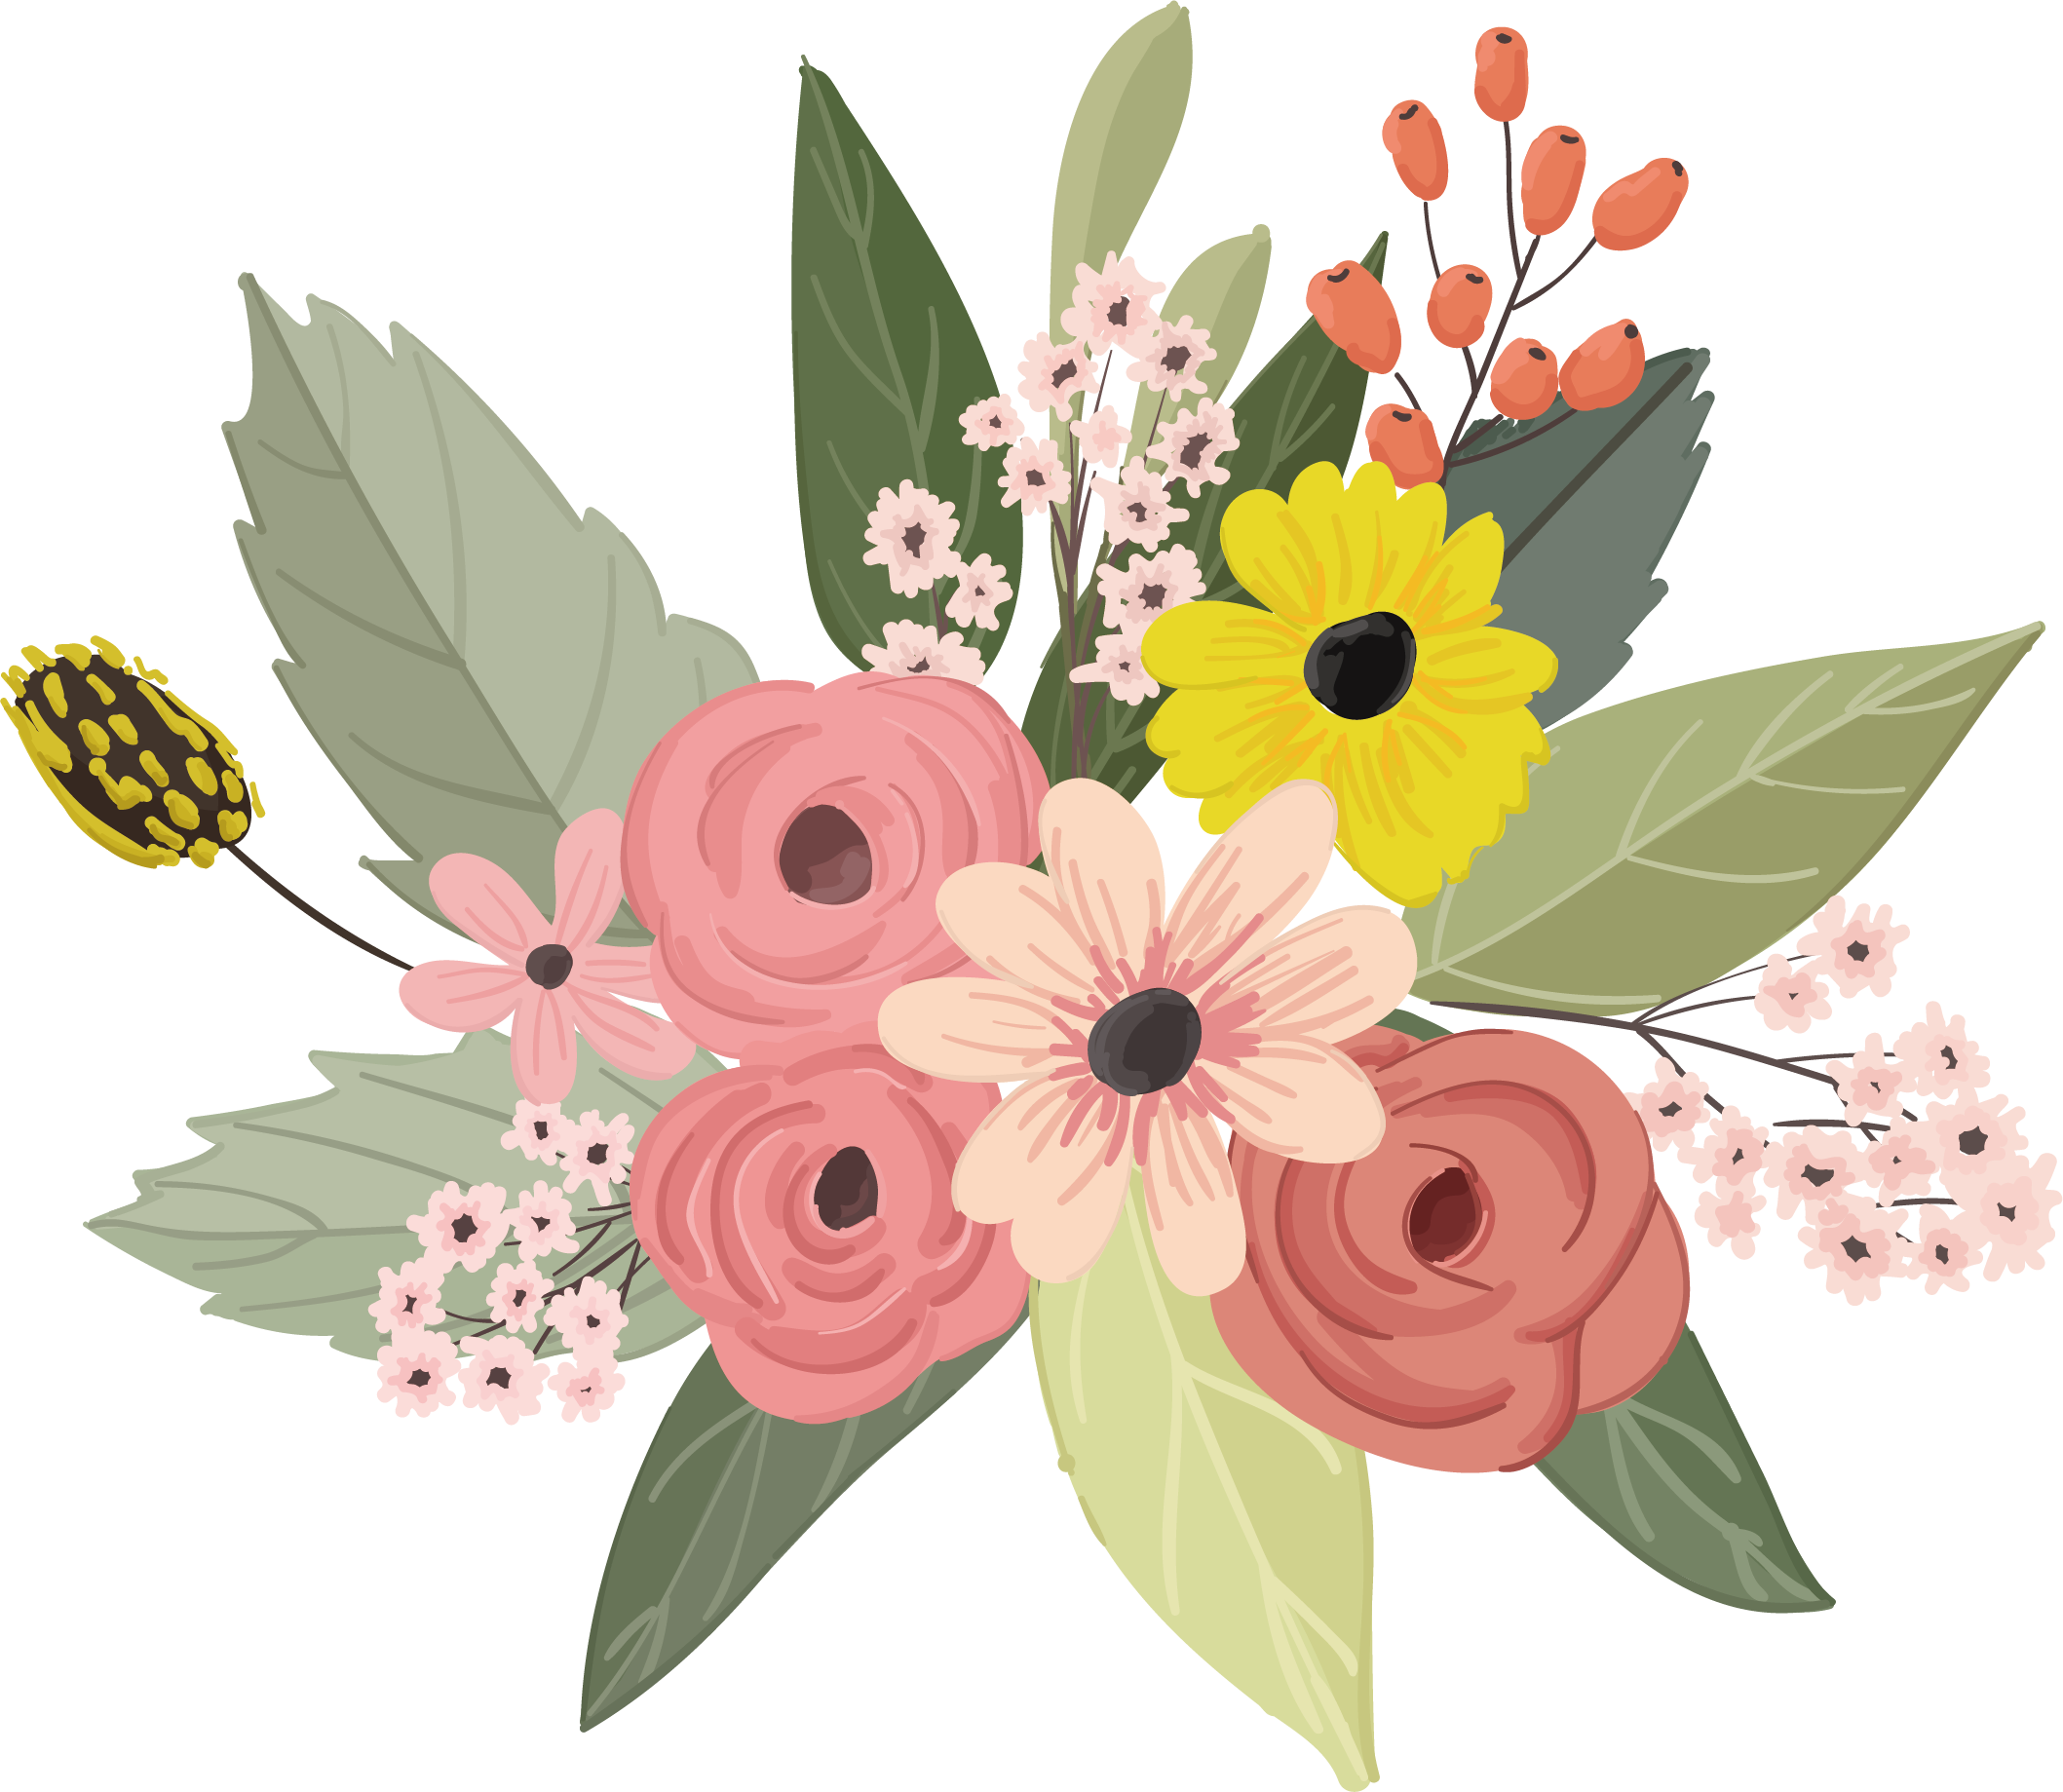 flower vector illustration download